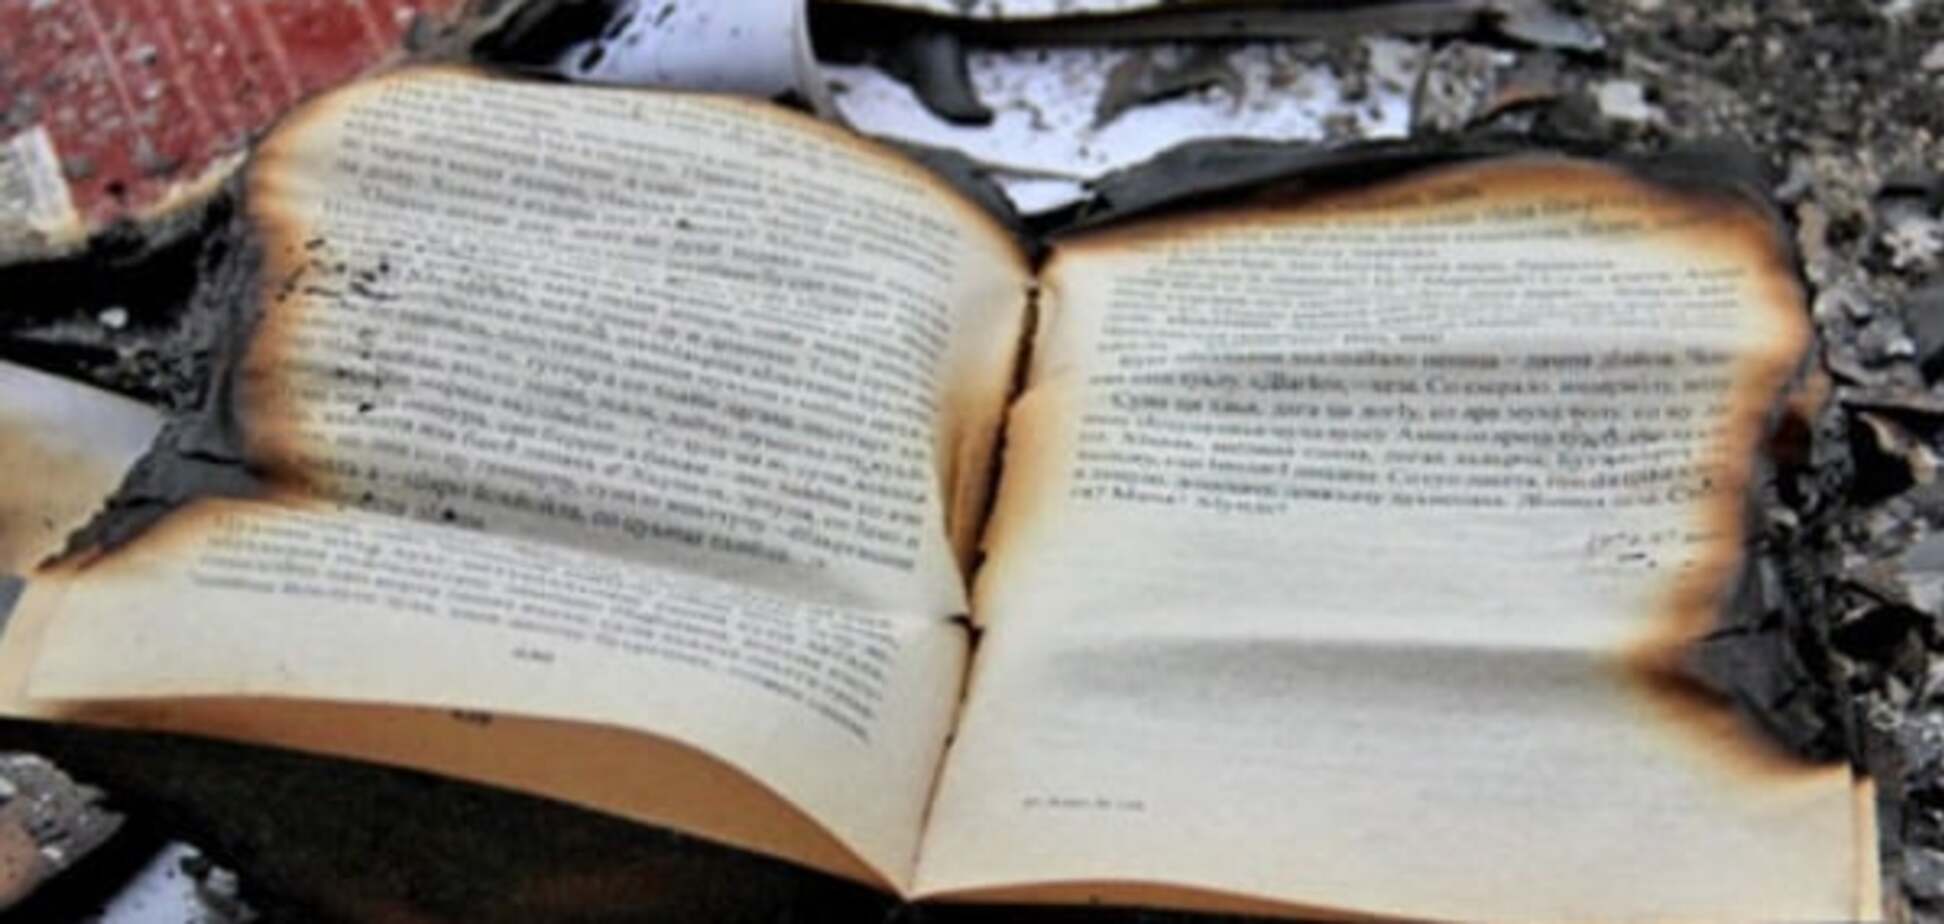 Зі спалення книг у Росії переключаться на людей - історик 